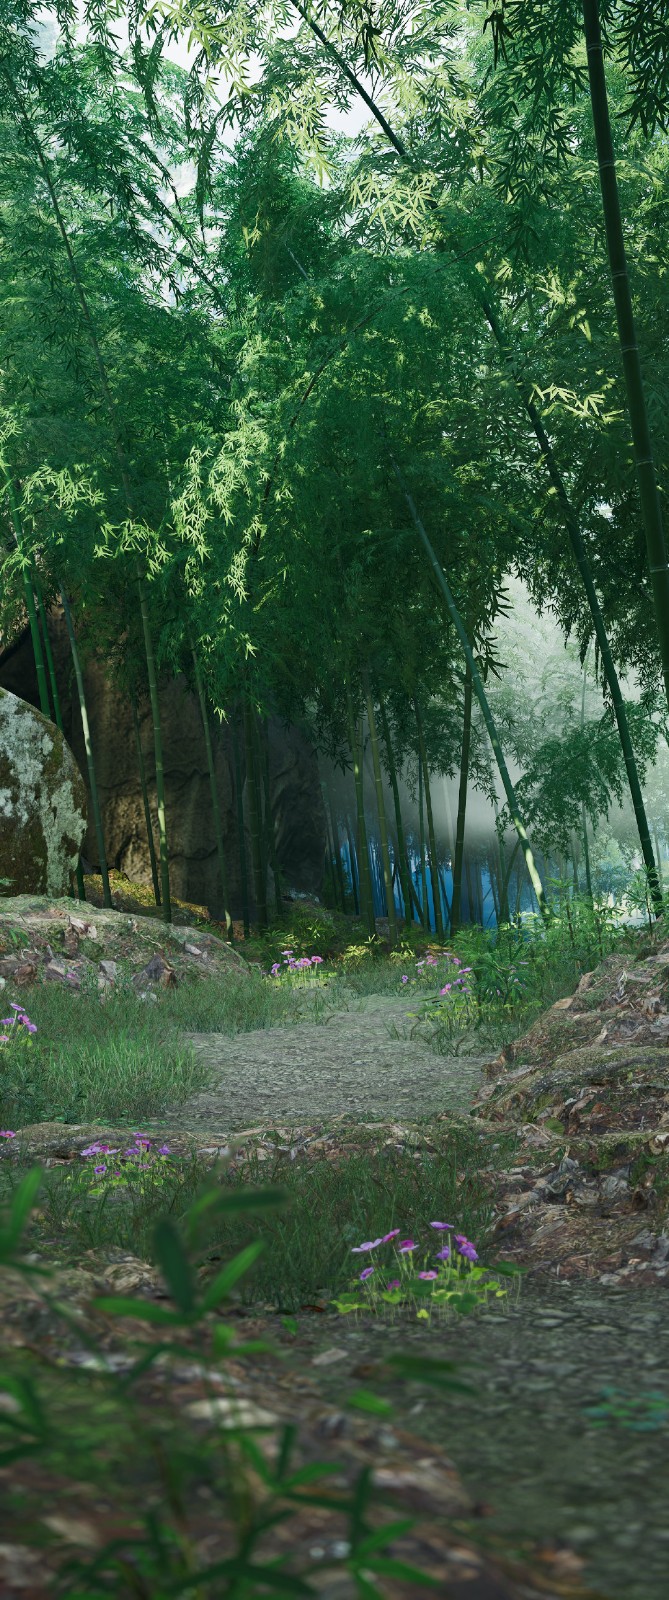 《仙劍奇俠傳7》玩家截圖賞 風景太美讓人沉醉